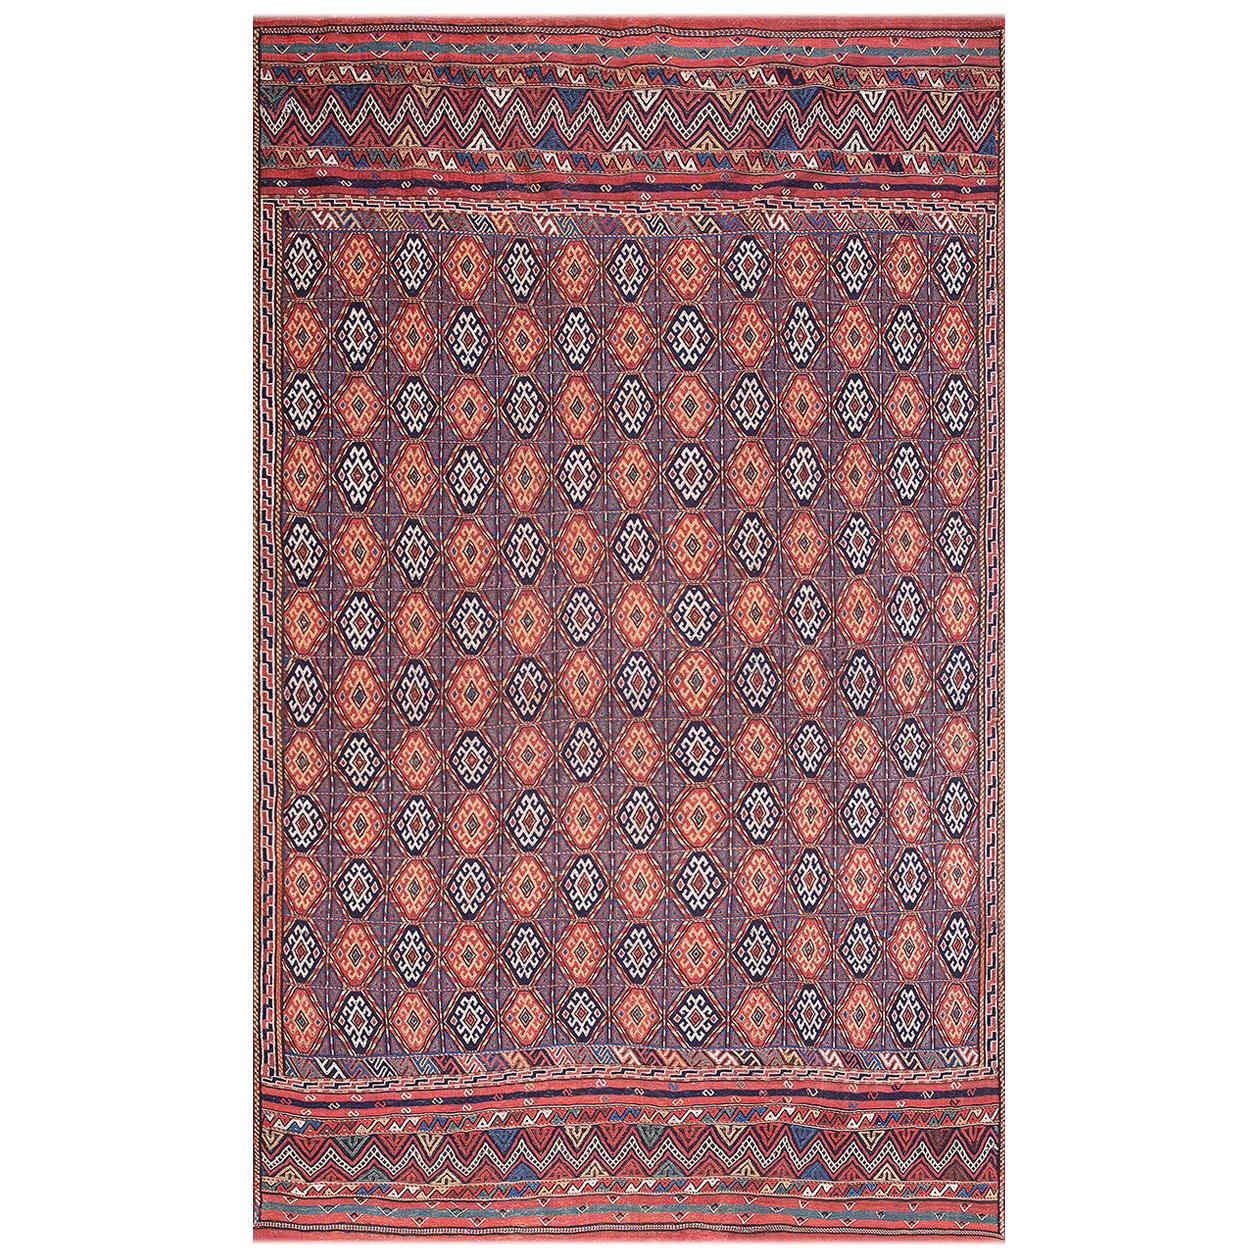 Antique Persian, Soumak Rug